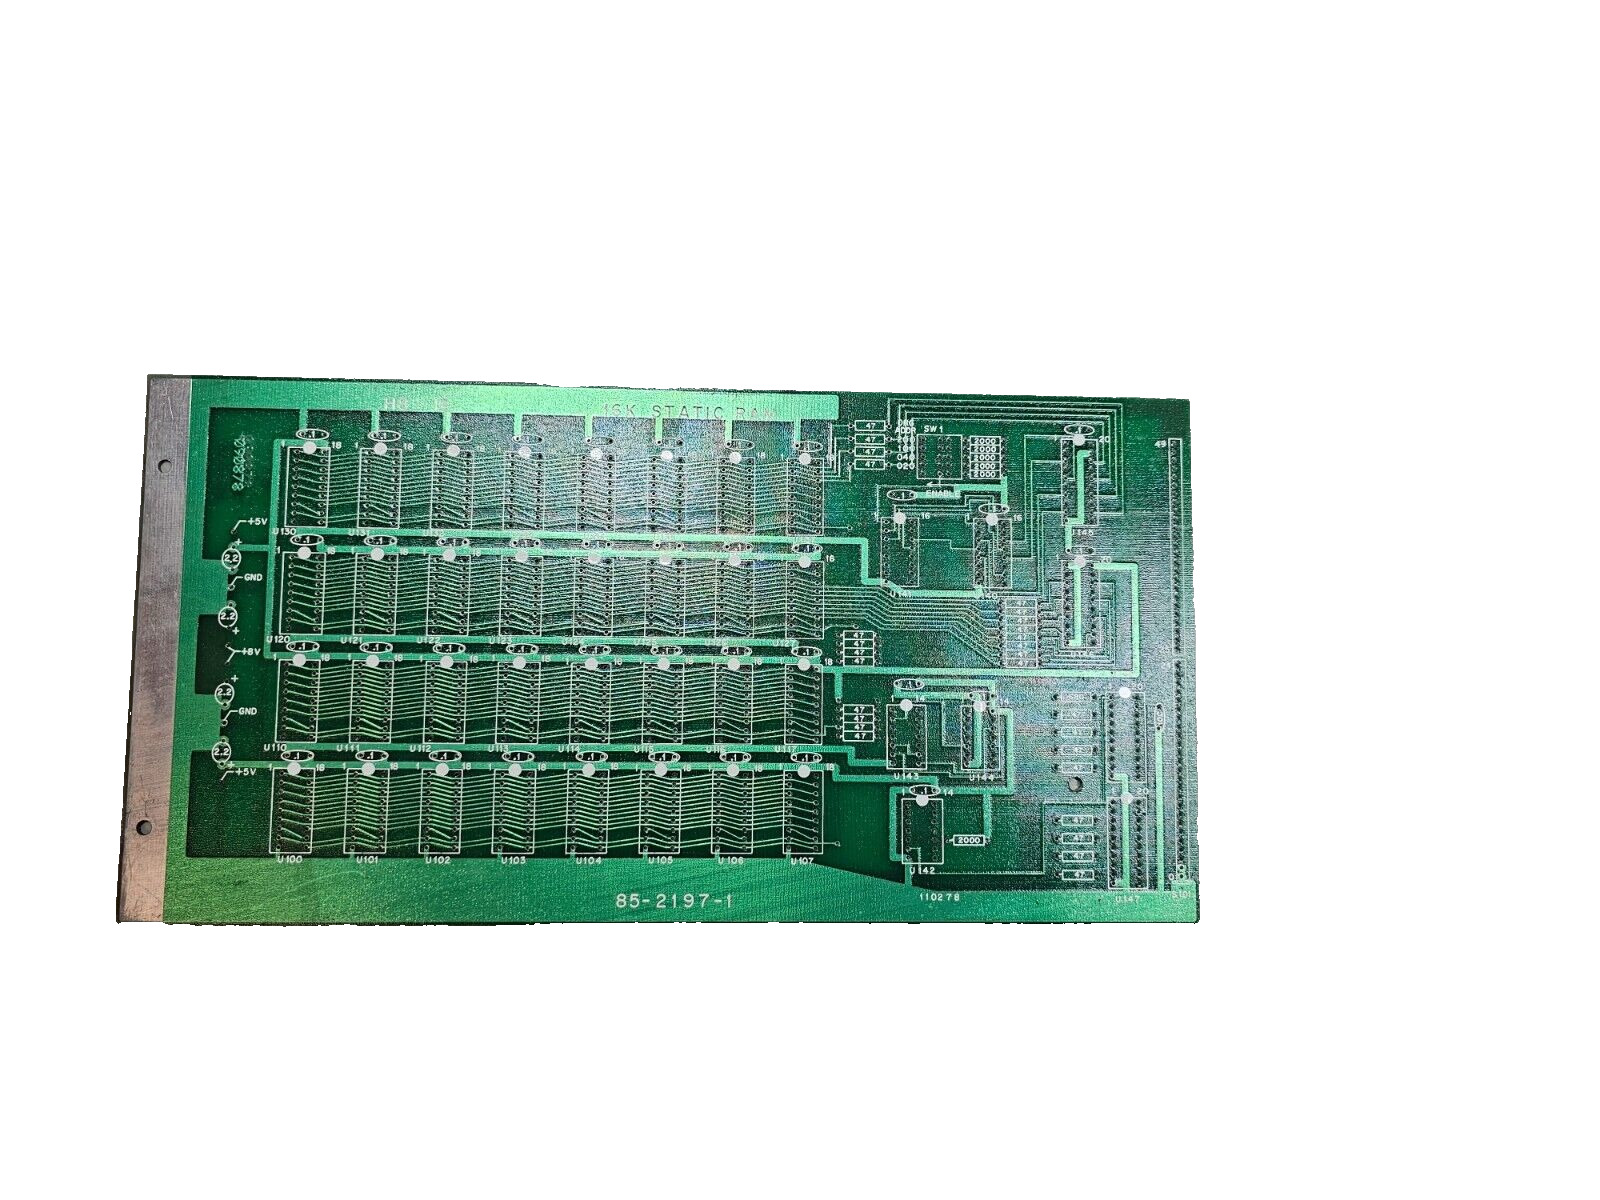 Vintage Rare Heath Heathkit 85-2197-1 16K Static RAM Board Unused